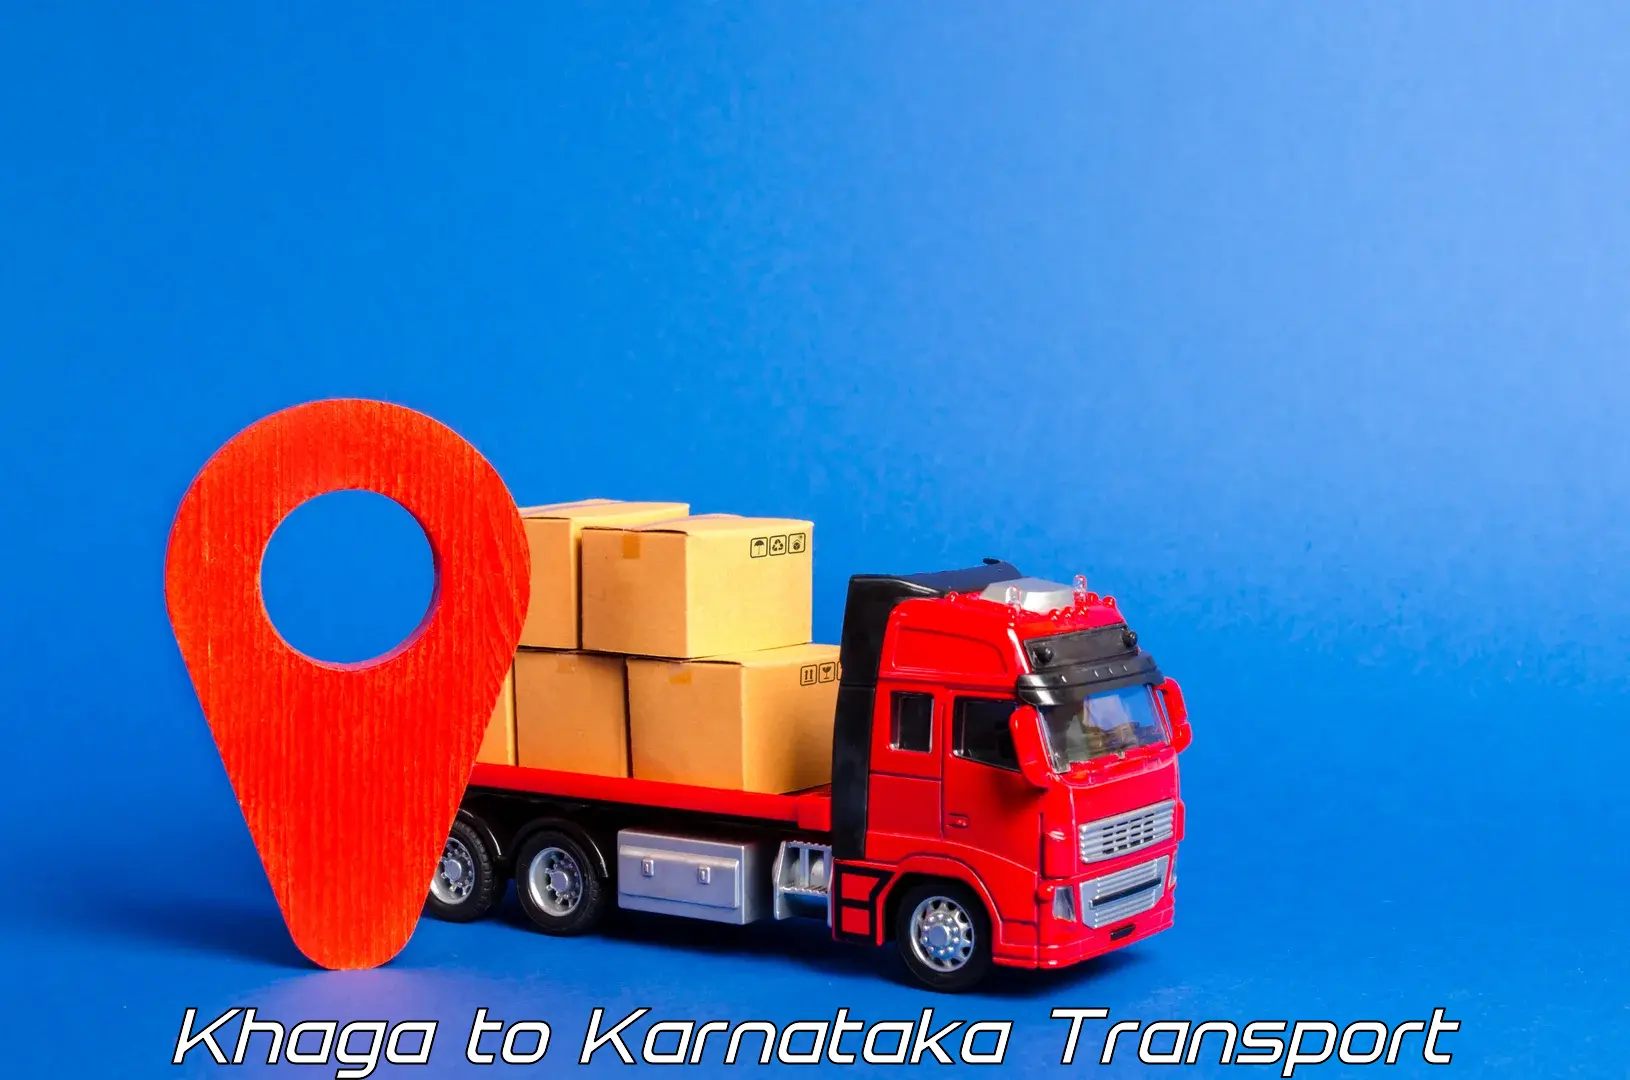 Parcel transport services Khaga to Hunsur